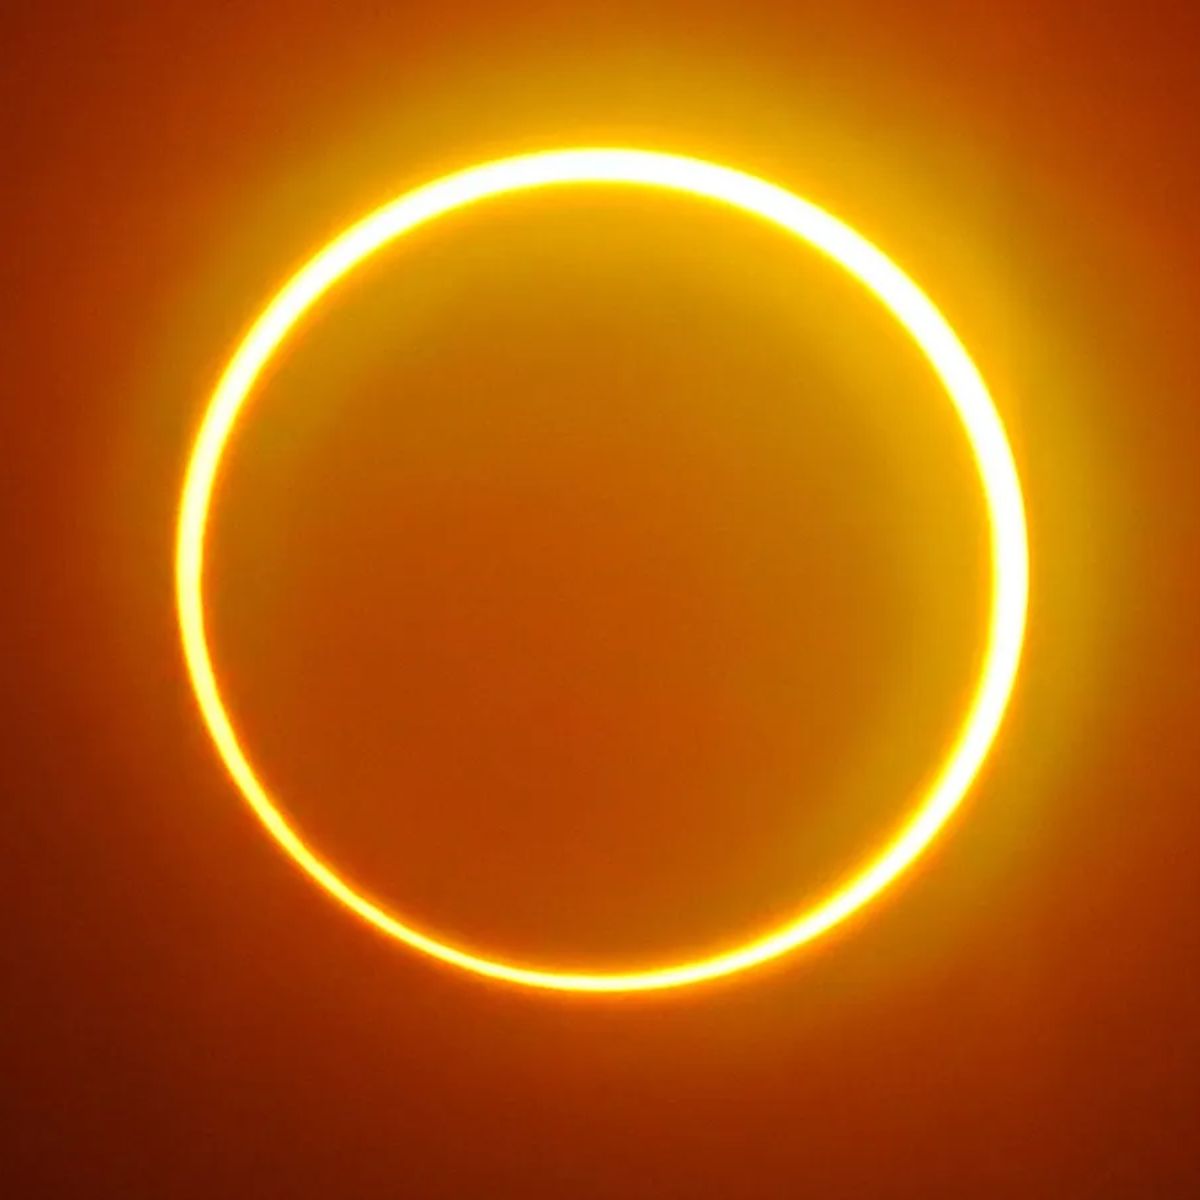 Eclipse solar anular en México este 14 de octubre.